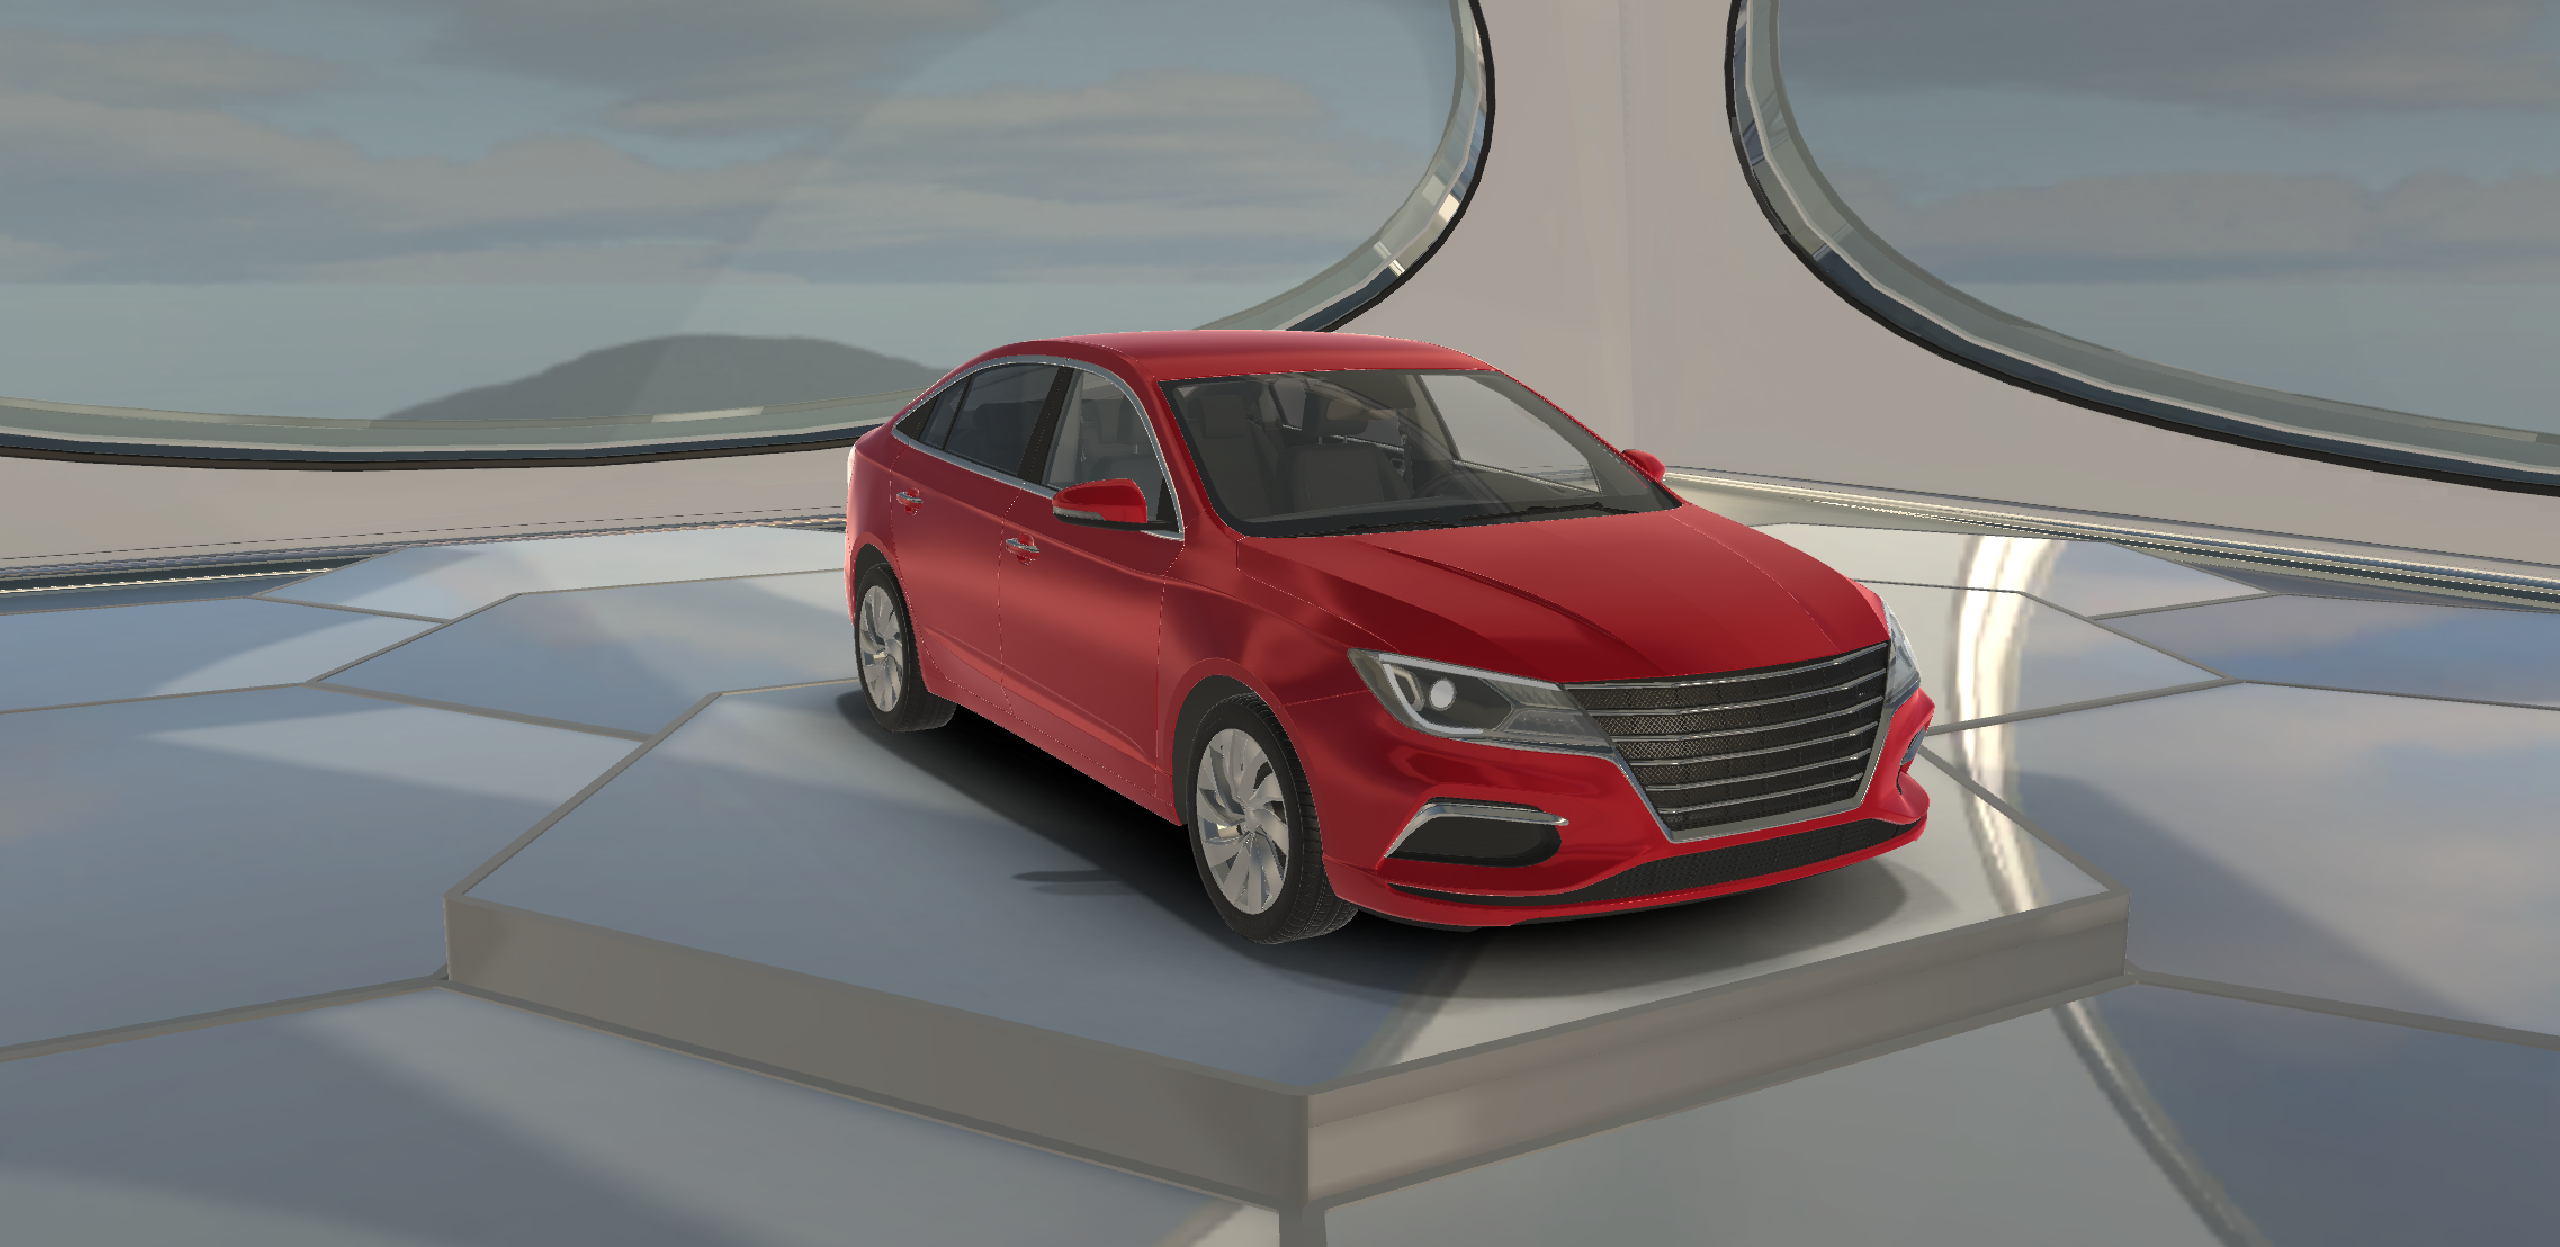 Sedan Car 2022 Lowpoly Sports Car 3D Model…